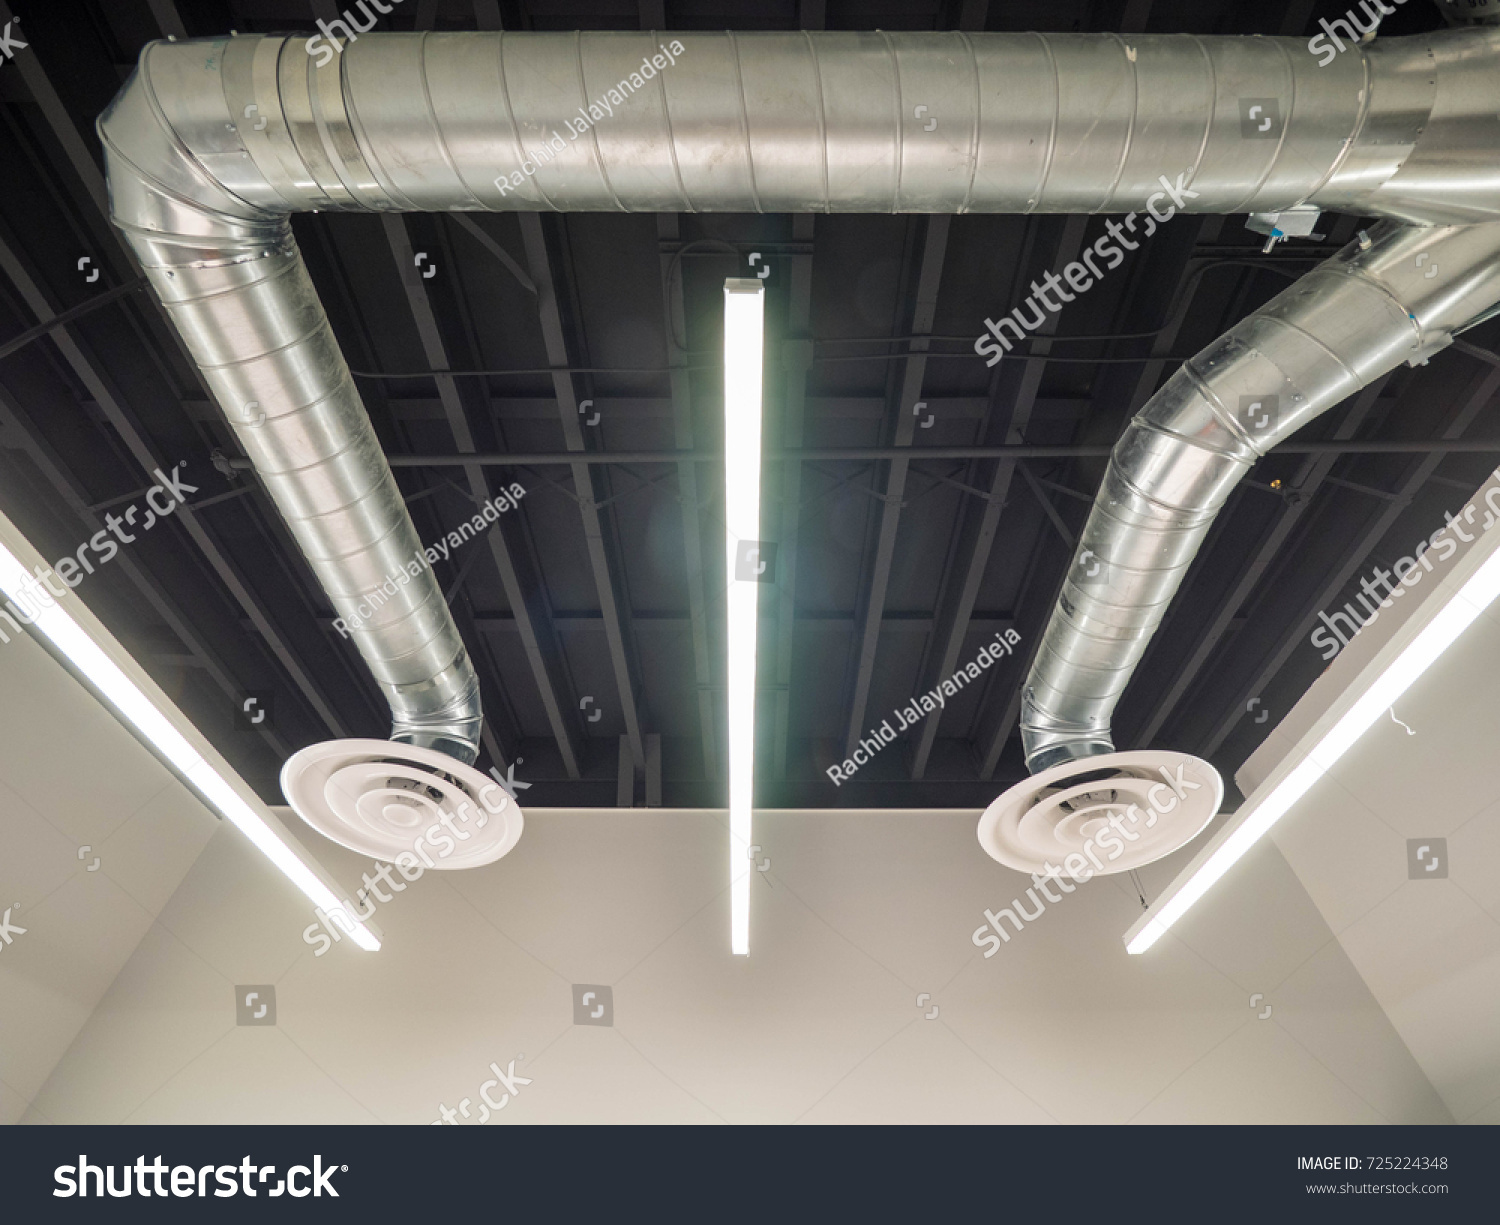 ен 12599 2000 вентиляция в зданиях методы испытаний и контроля